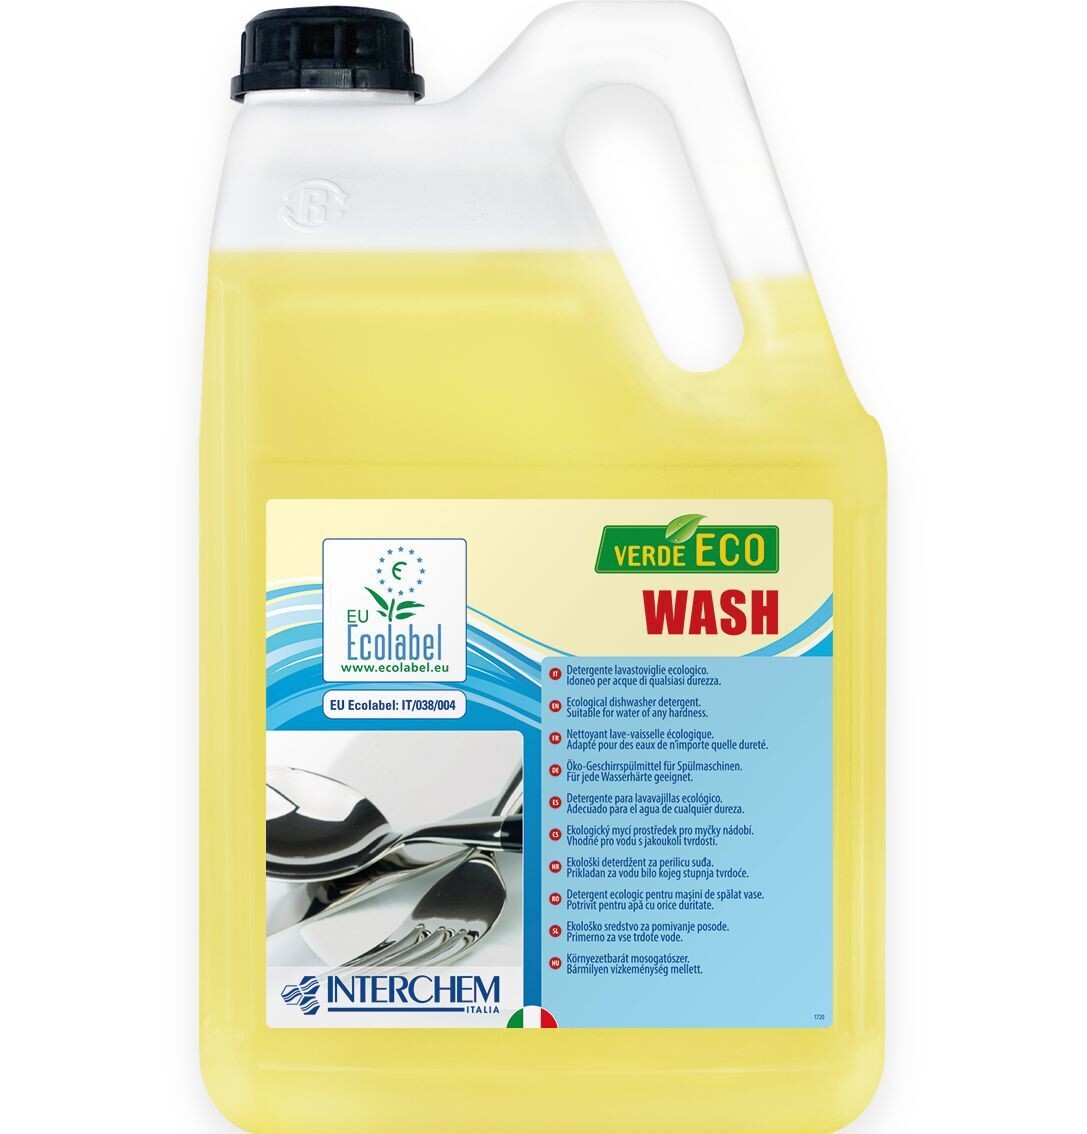 Verde Eco wash